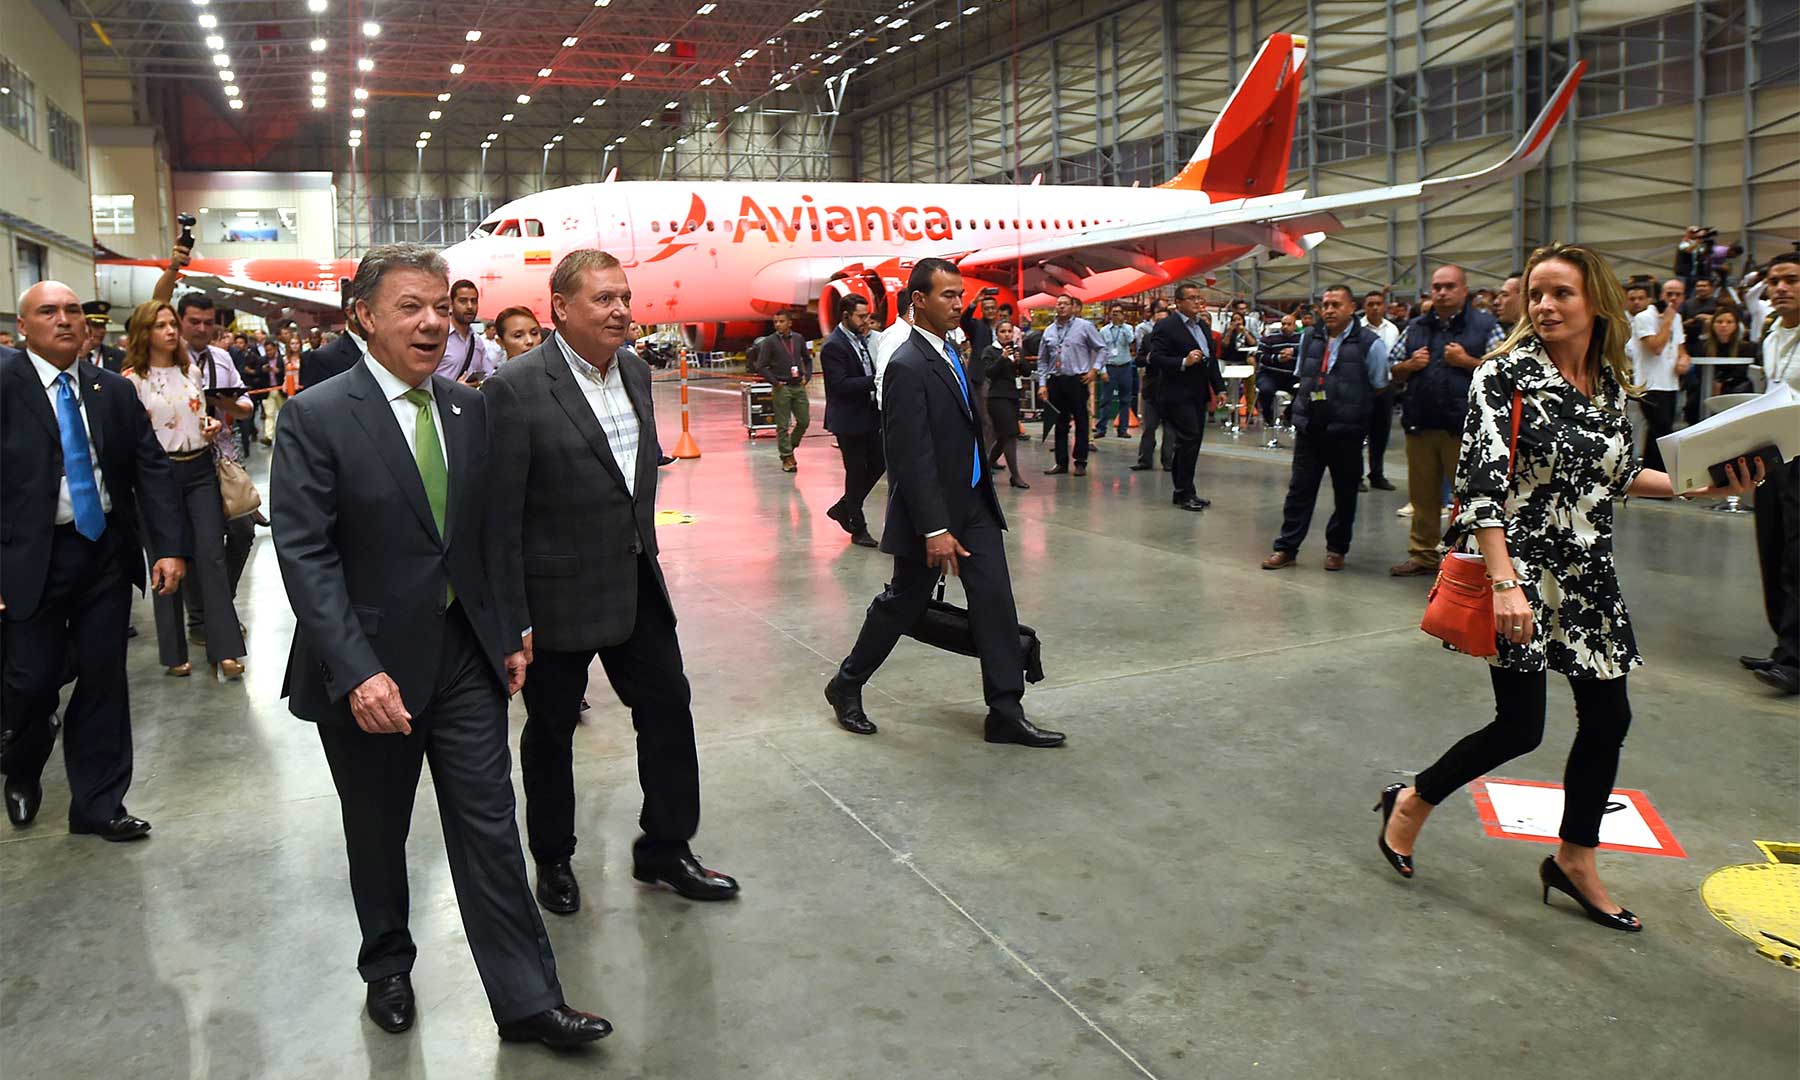 El Presidente Santos recorre el nuevo Centro de Mantenimiento de Avianca, considerado el más moderno de América Latina, con casi 45.000 metros cuadrados de instalaciones.